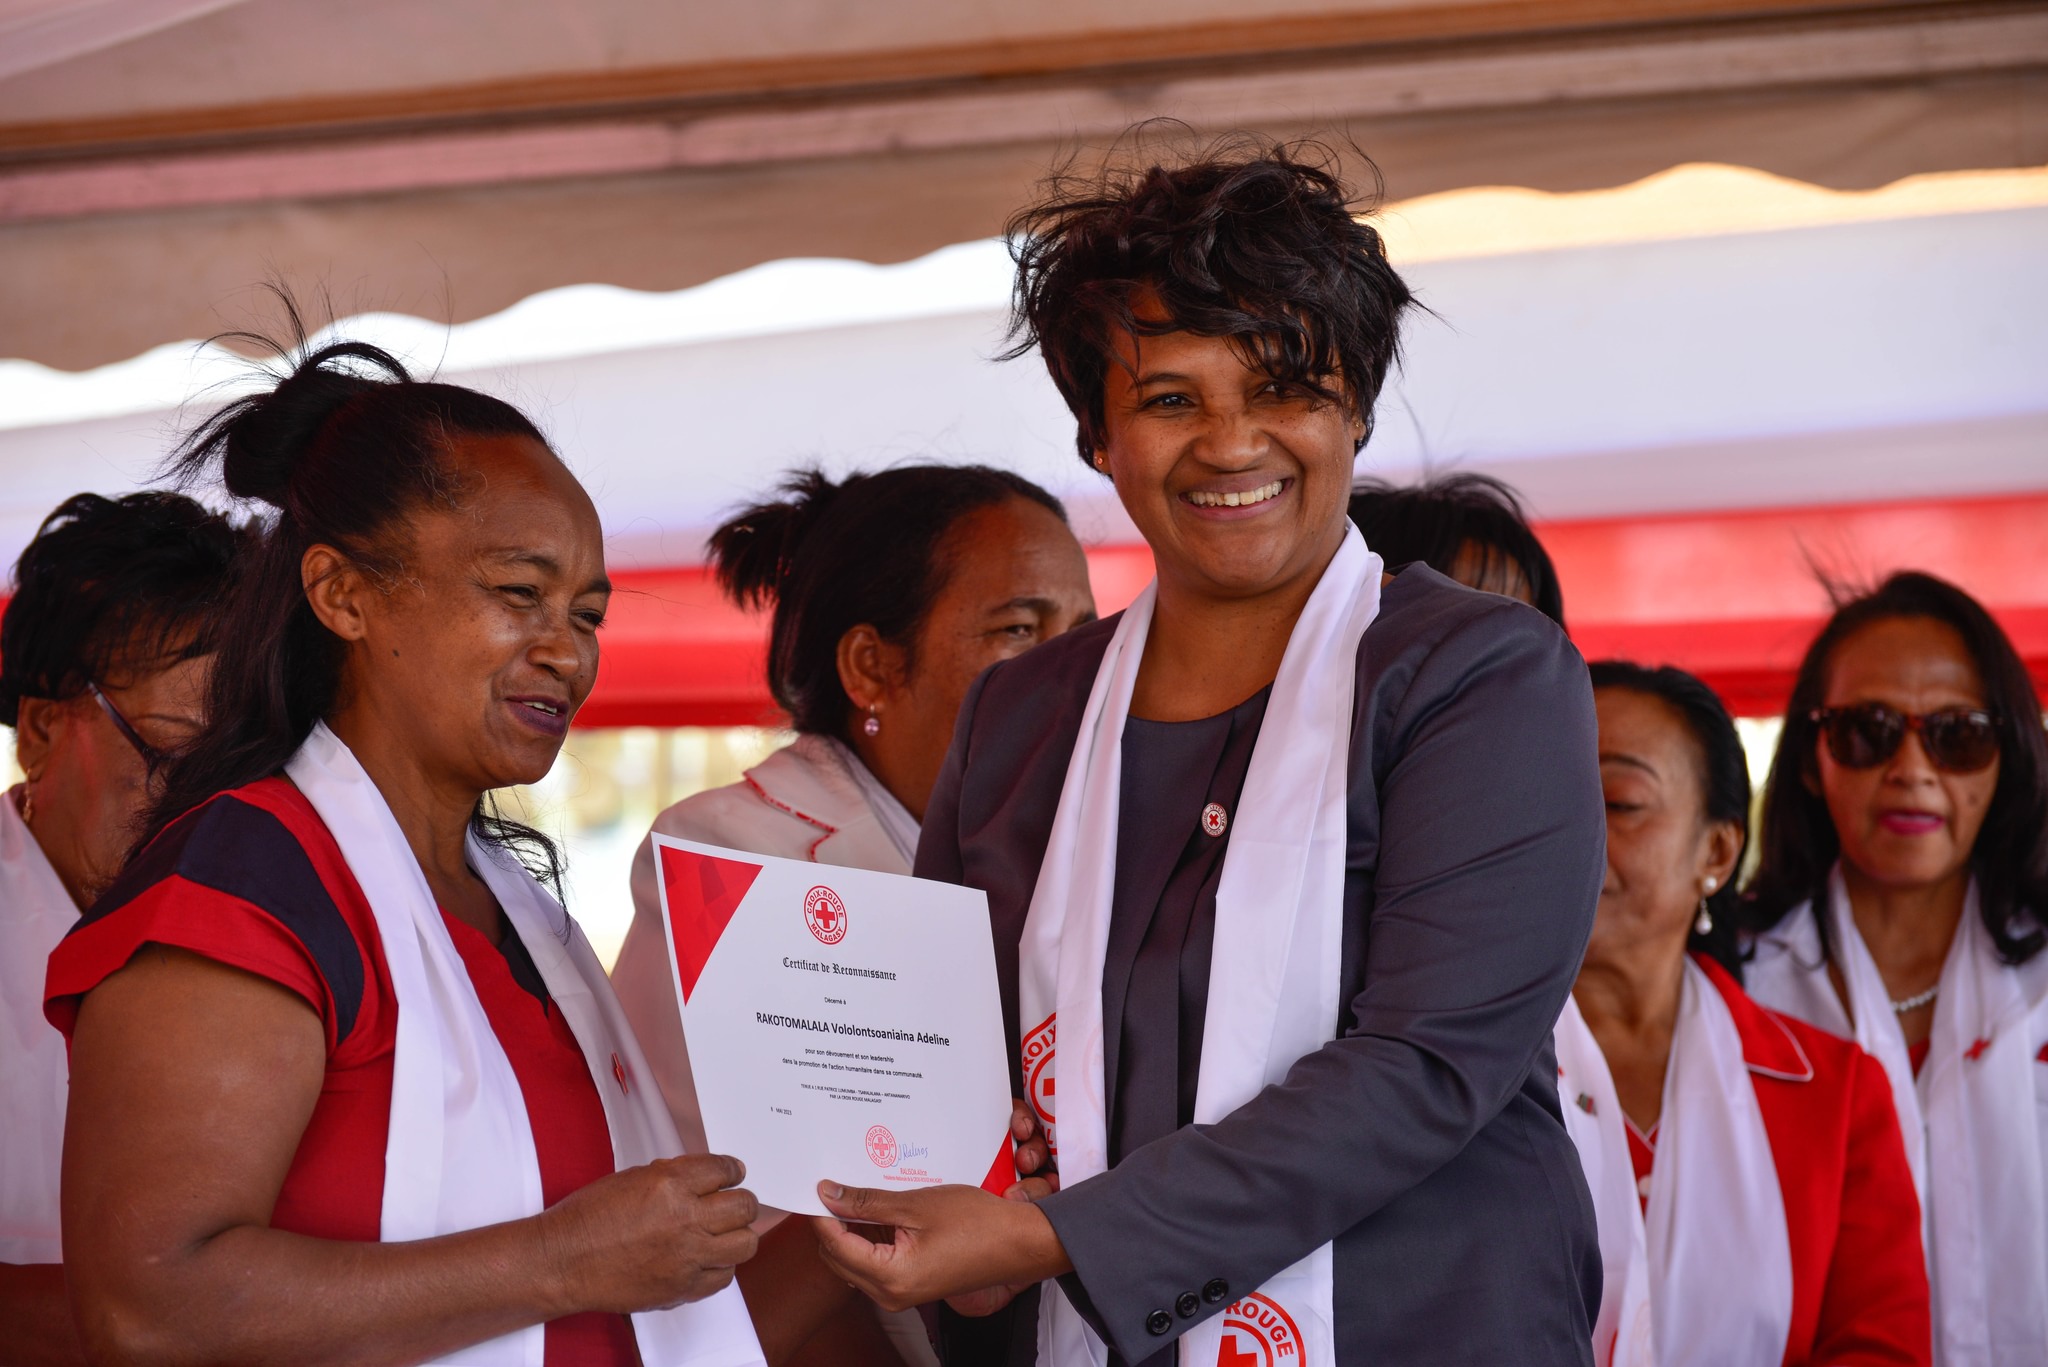 Le 60ème anniversaire de la Croix-Rouge Malagasy